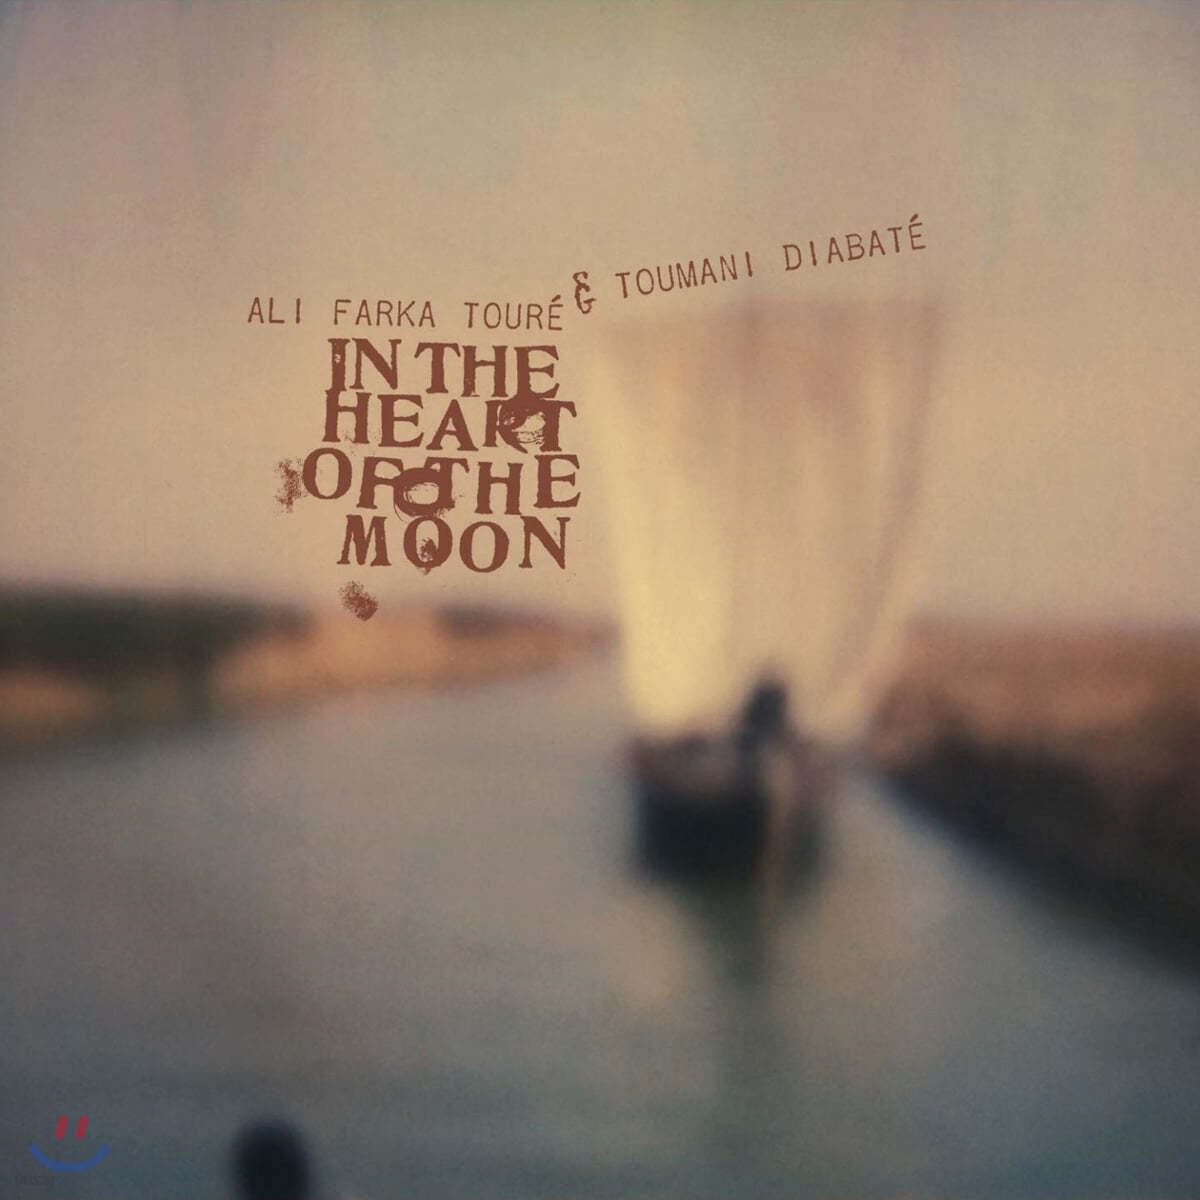 Ali Farka Toure & Toumani Diabate (알리 파르카 투레 & 투마니 디아바테) - In the Heart of the Moon